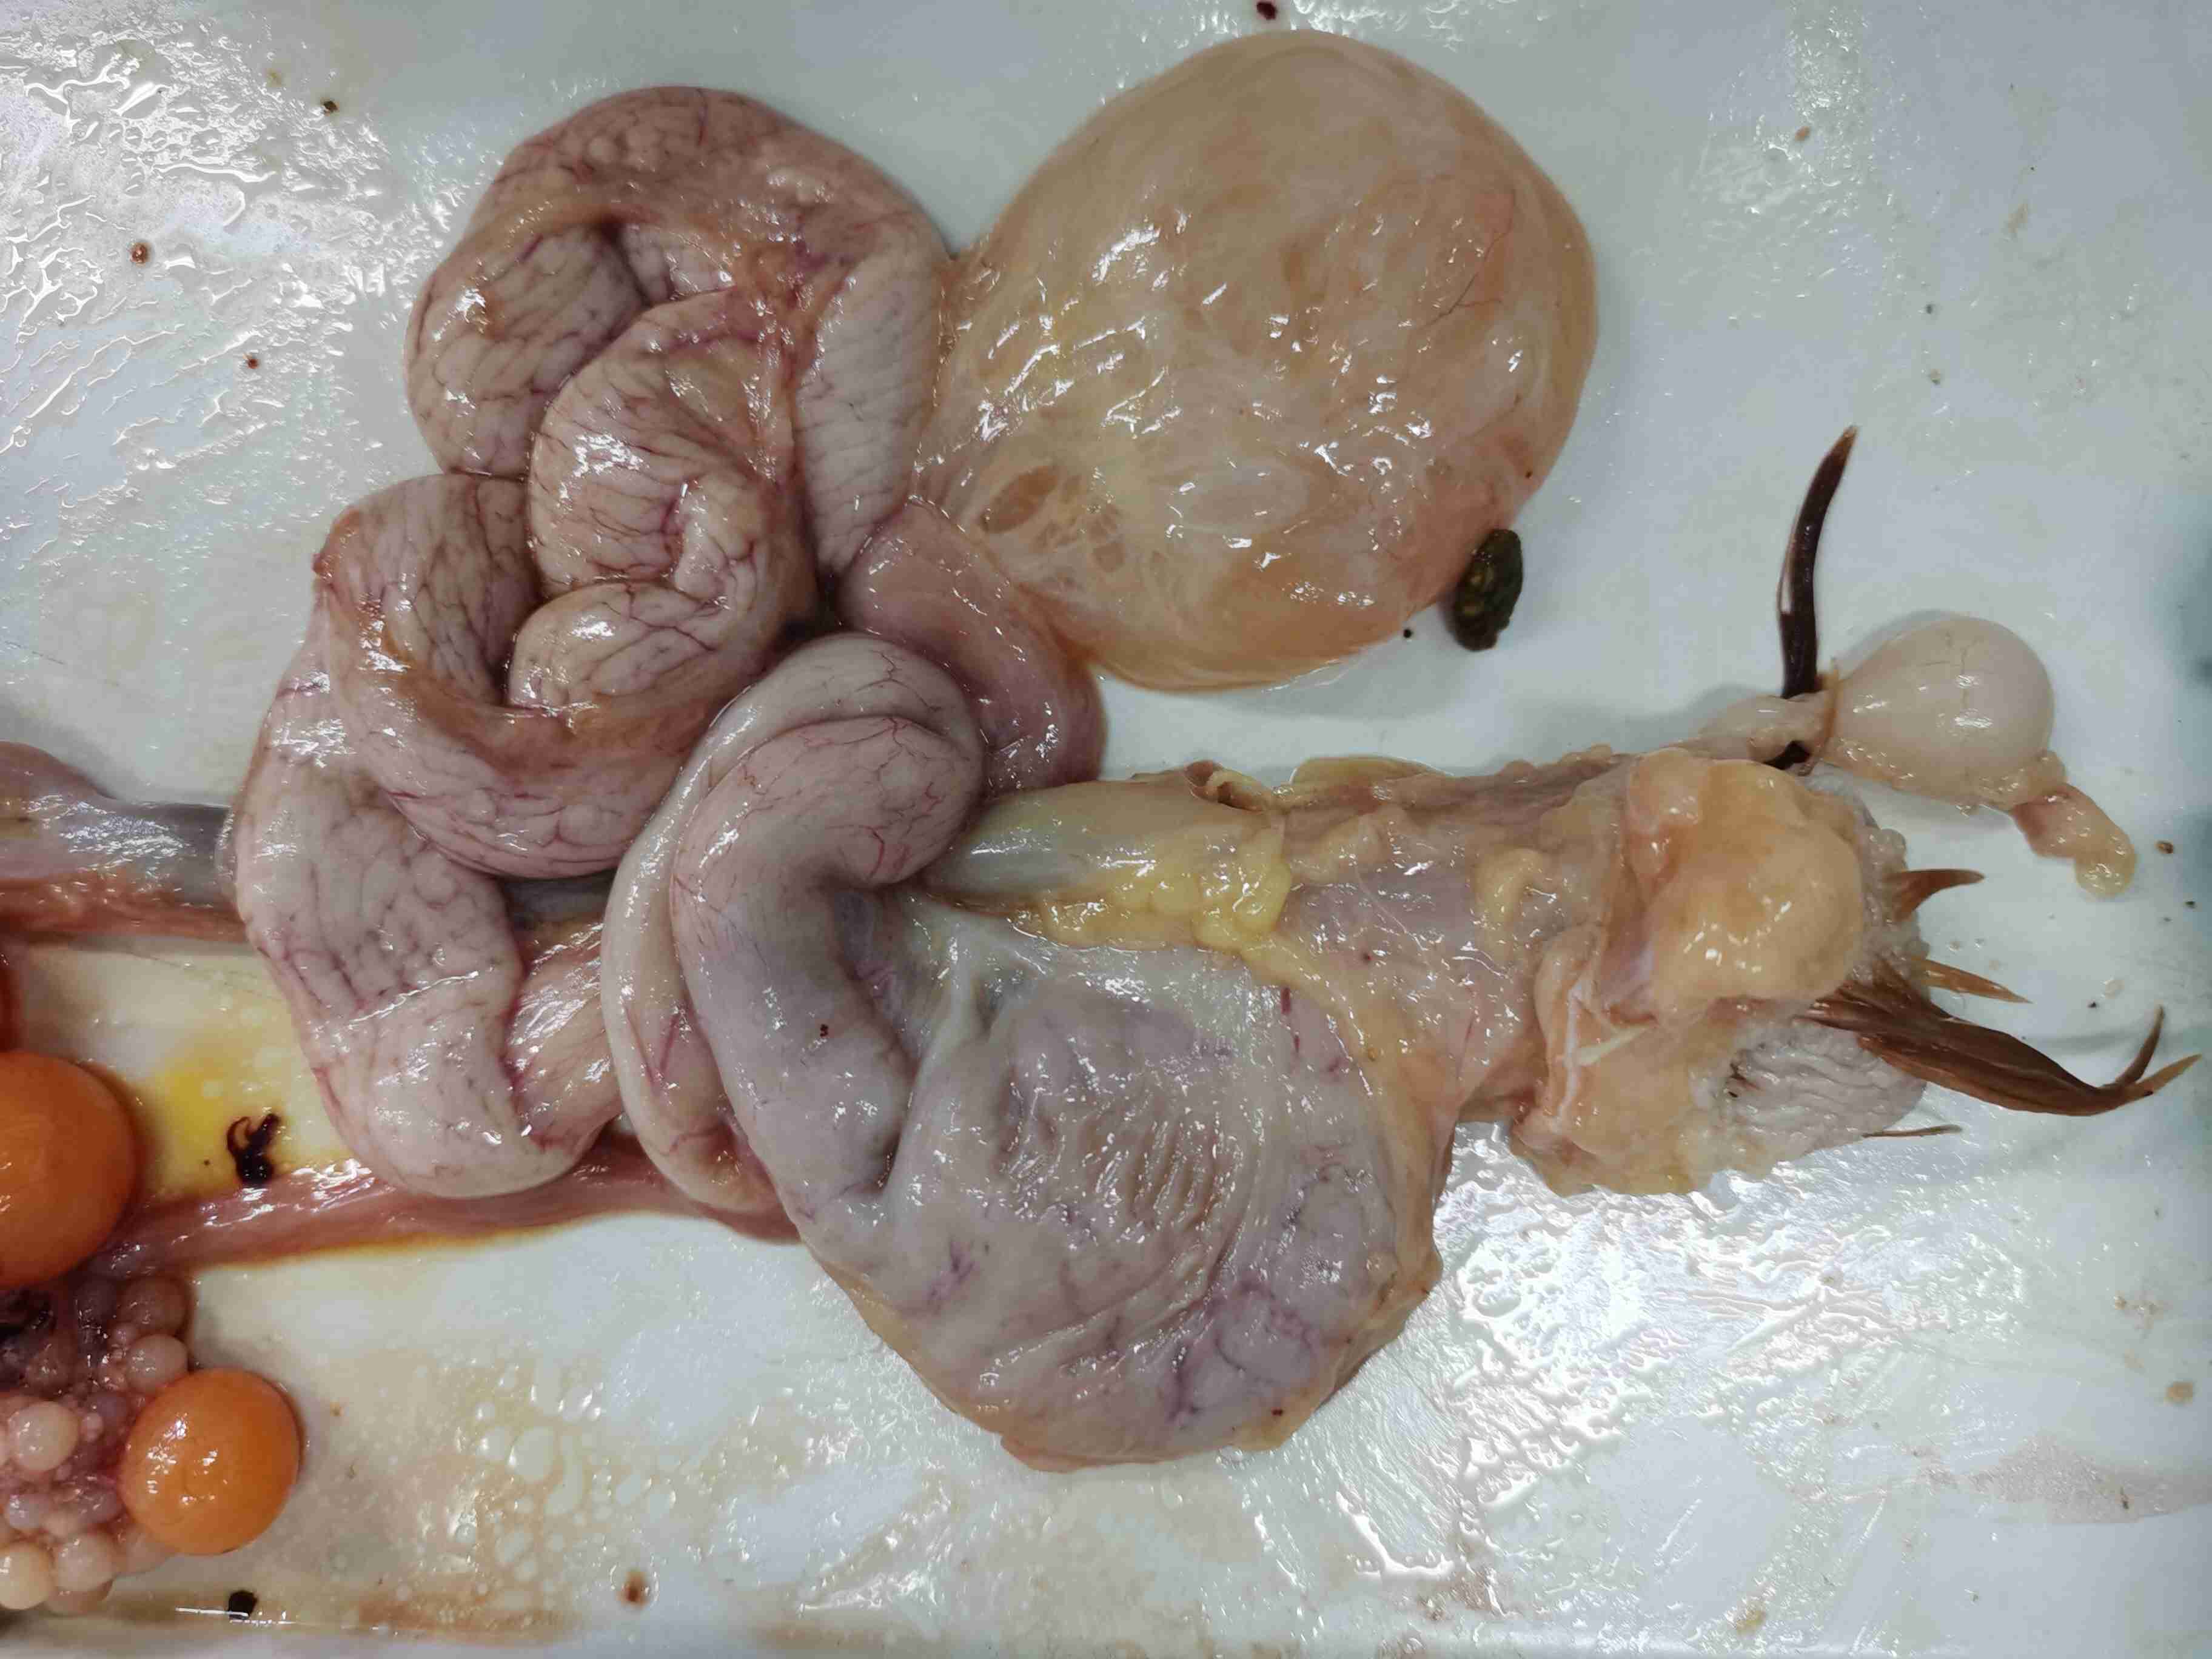 鸡的卵巢里有些卵泡变黑变硬而且输卵管外面有一个小孩拳头大的液囊